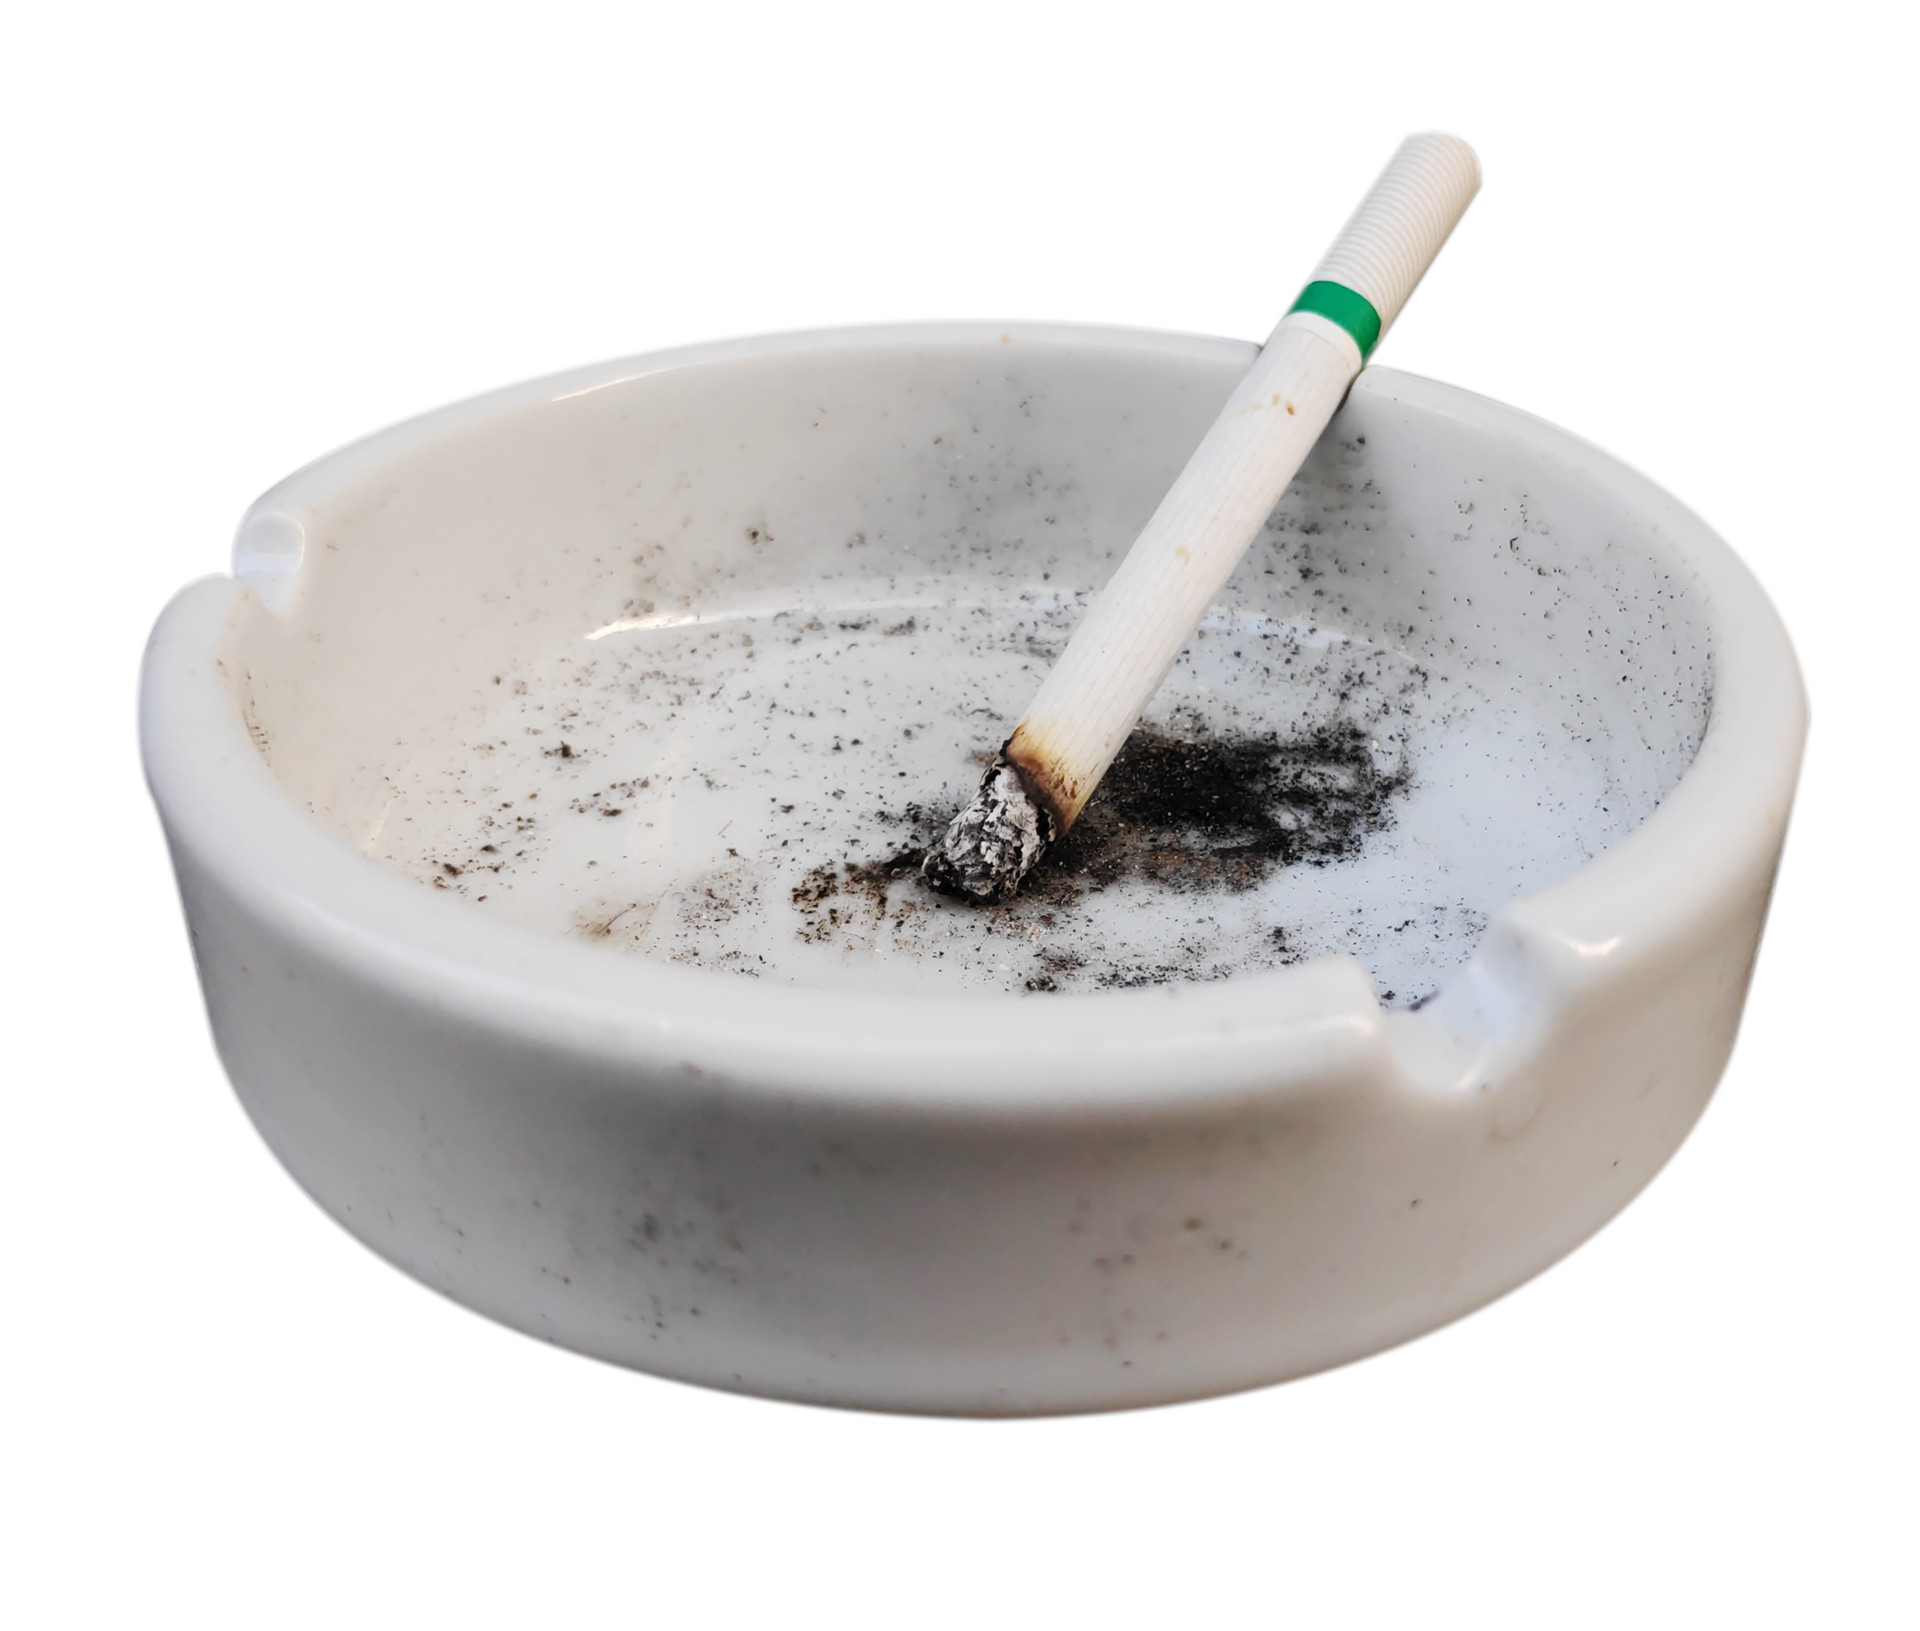 File:Aschenbecher mit brennender Zigarette 4.jpg - Wikimedia Commons